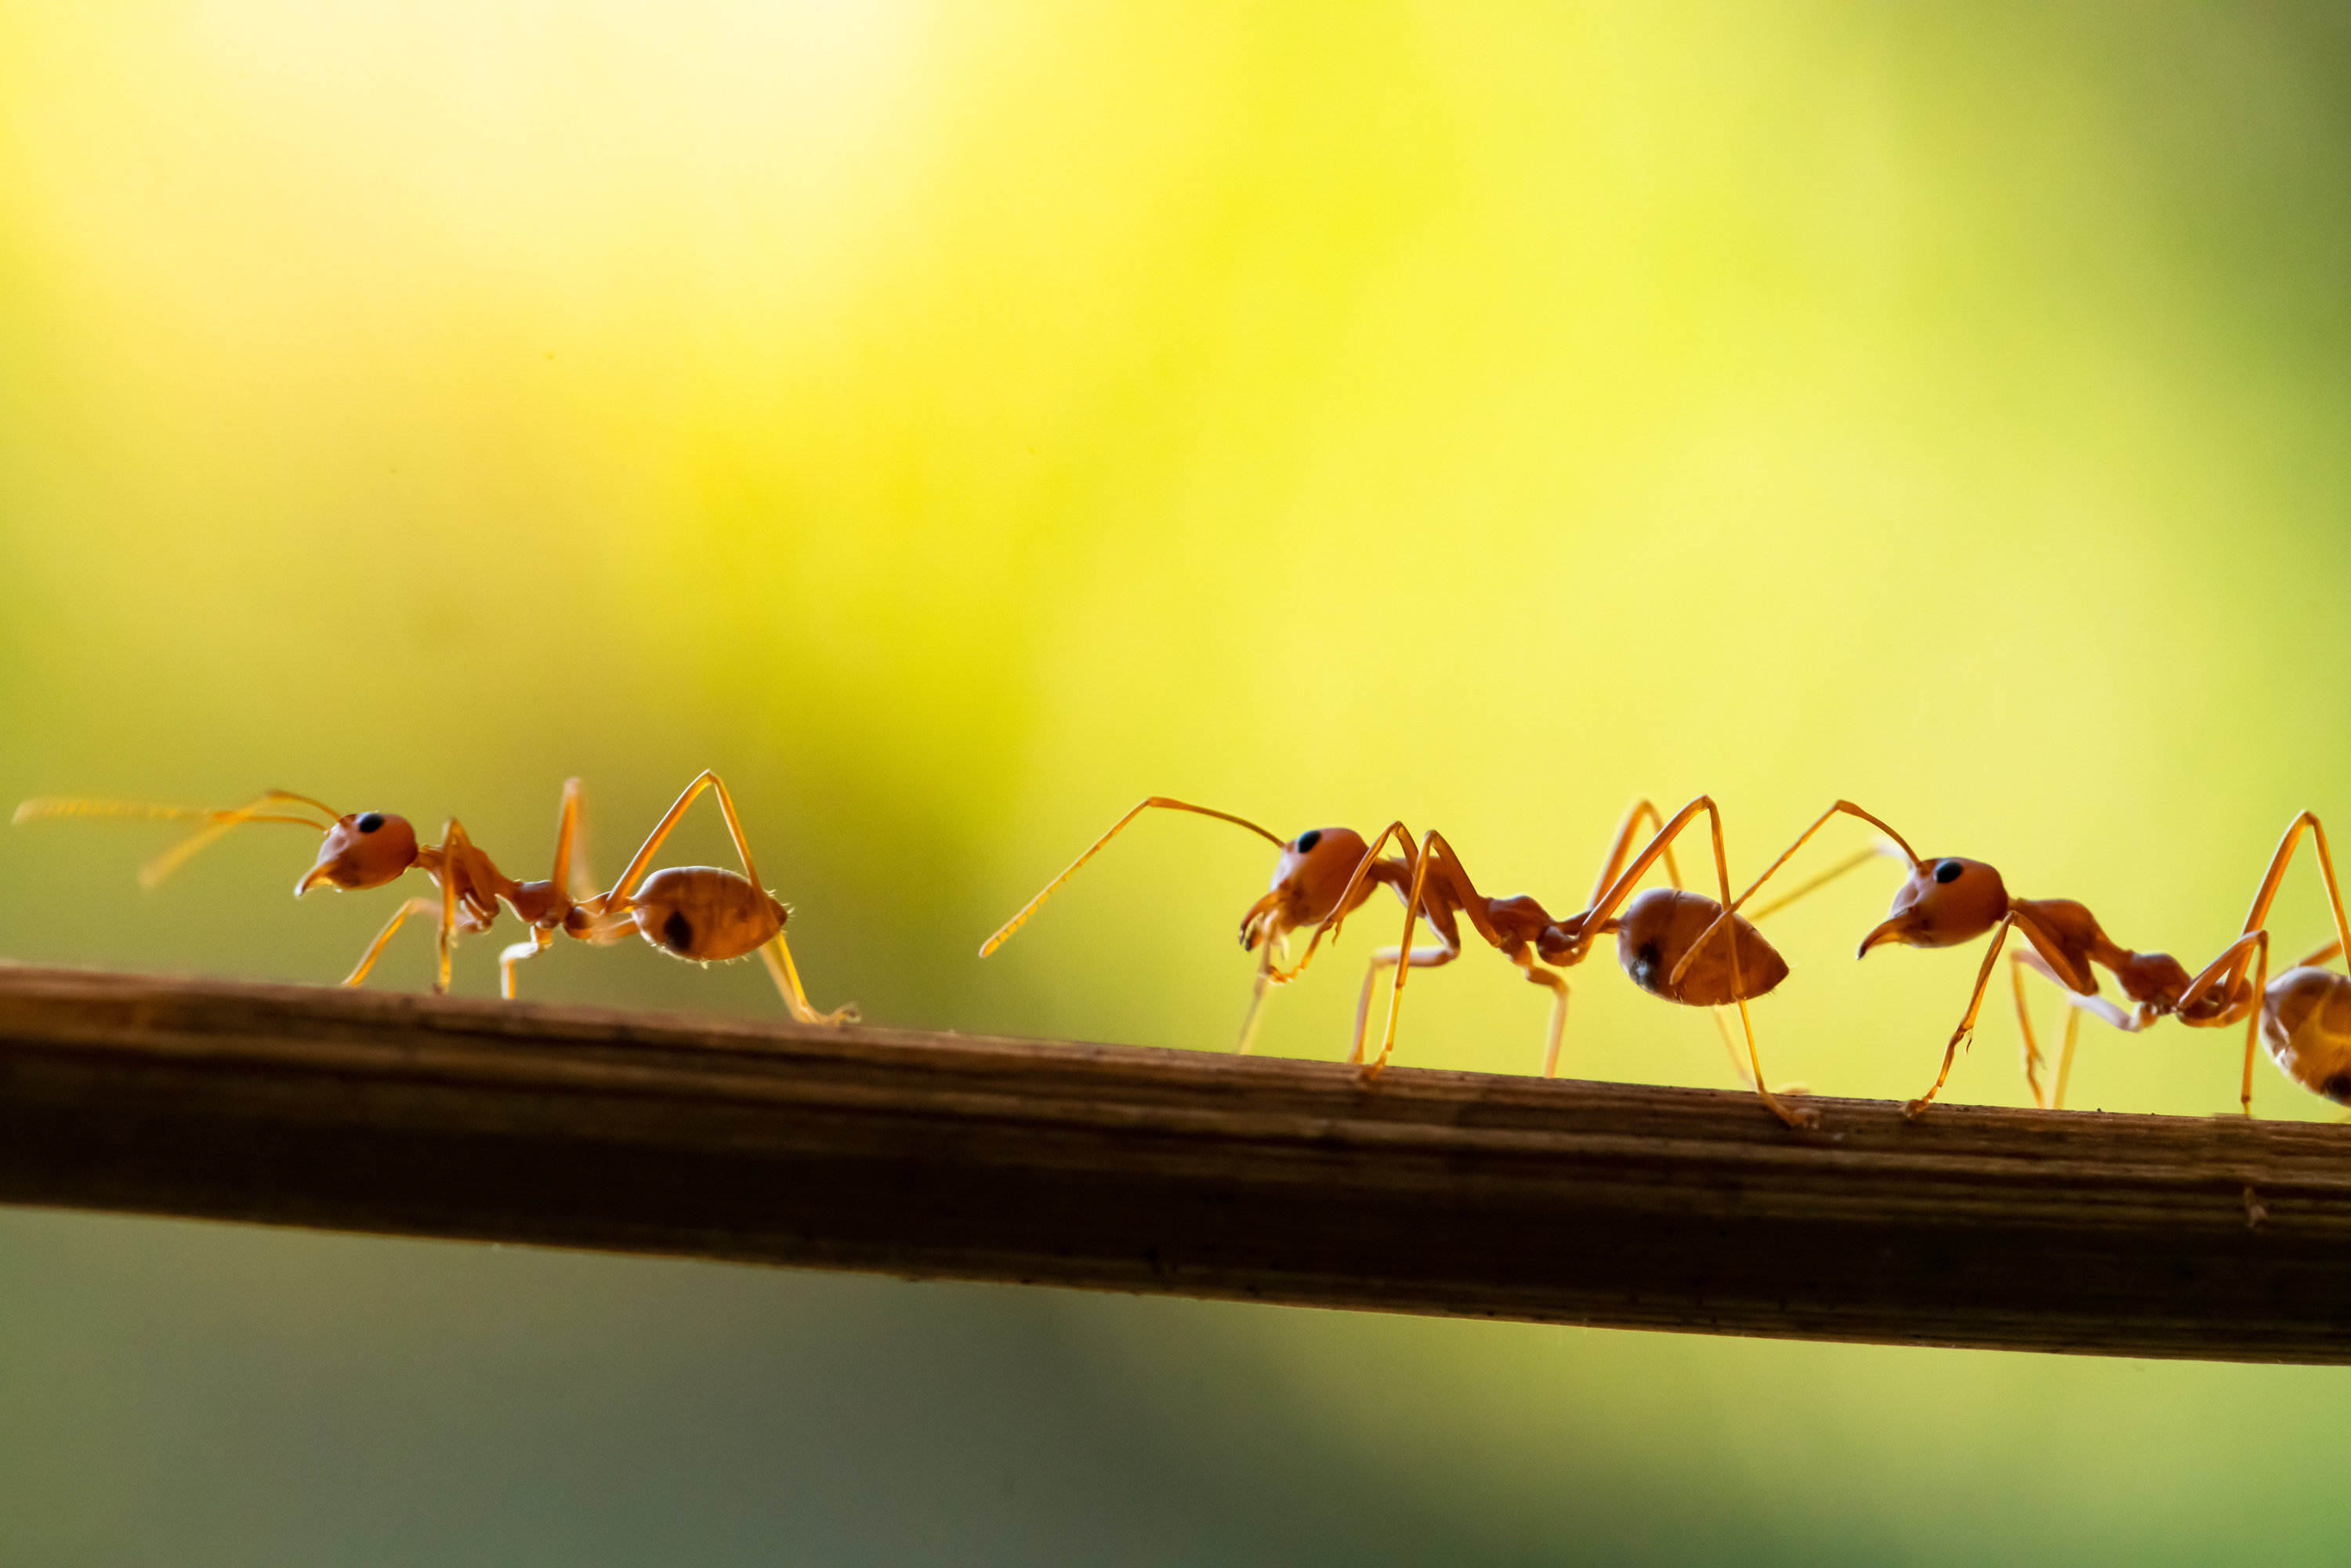 Ants as Seasonal Pests